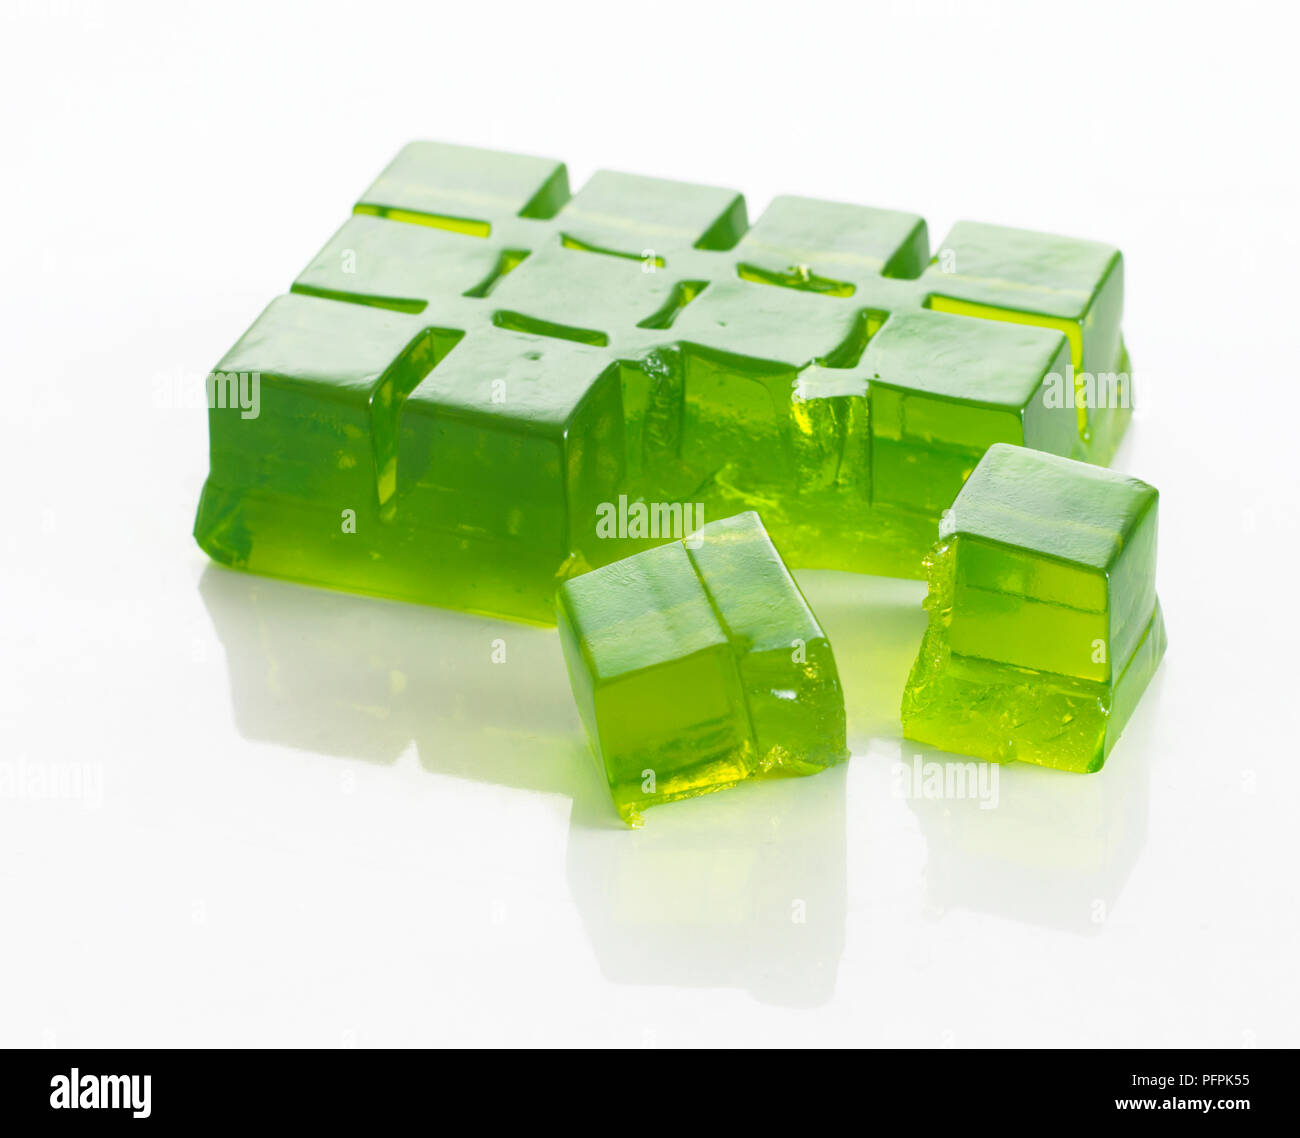 Baustein der Reihe Green Jelly (mit Ice Cube tray), mit einigen Stücken abgebrochen Stockfoto